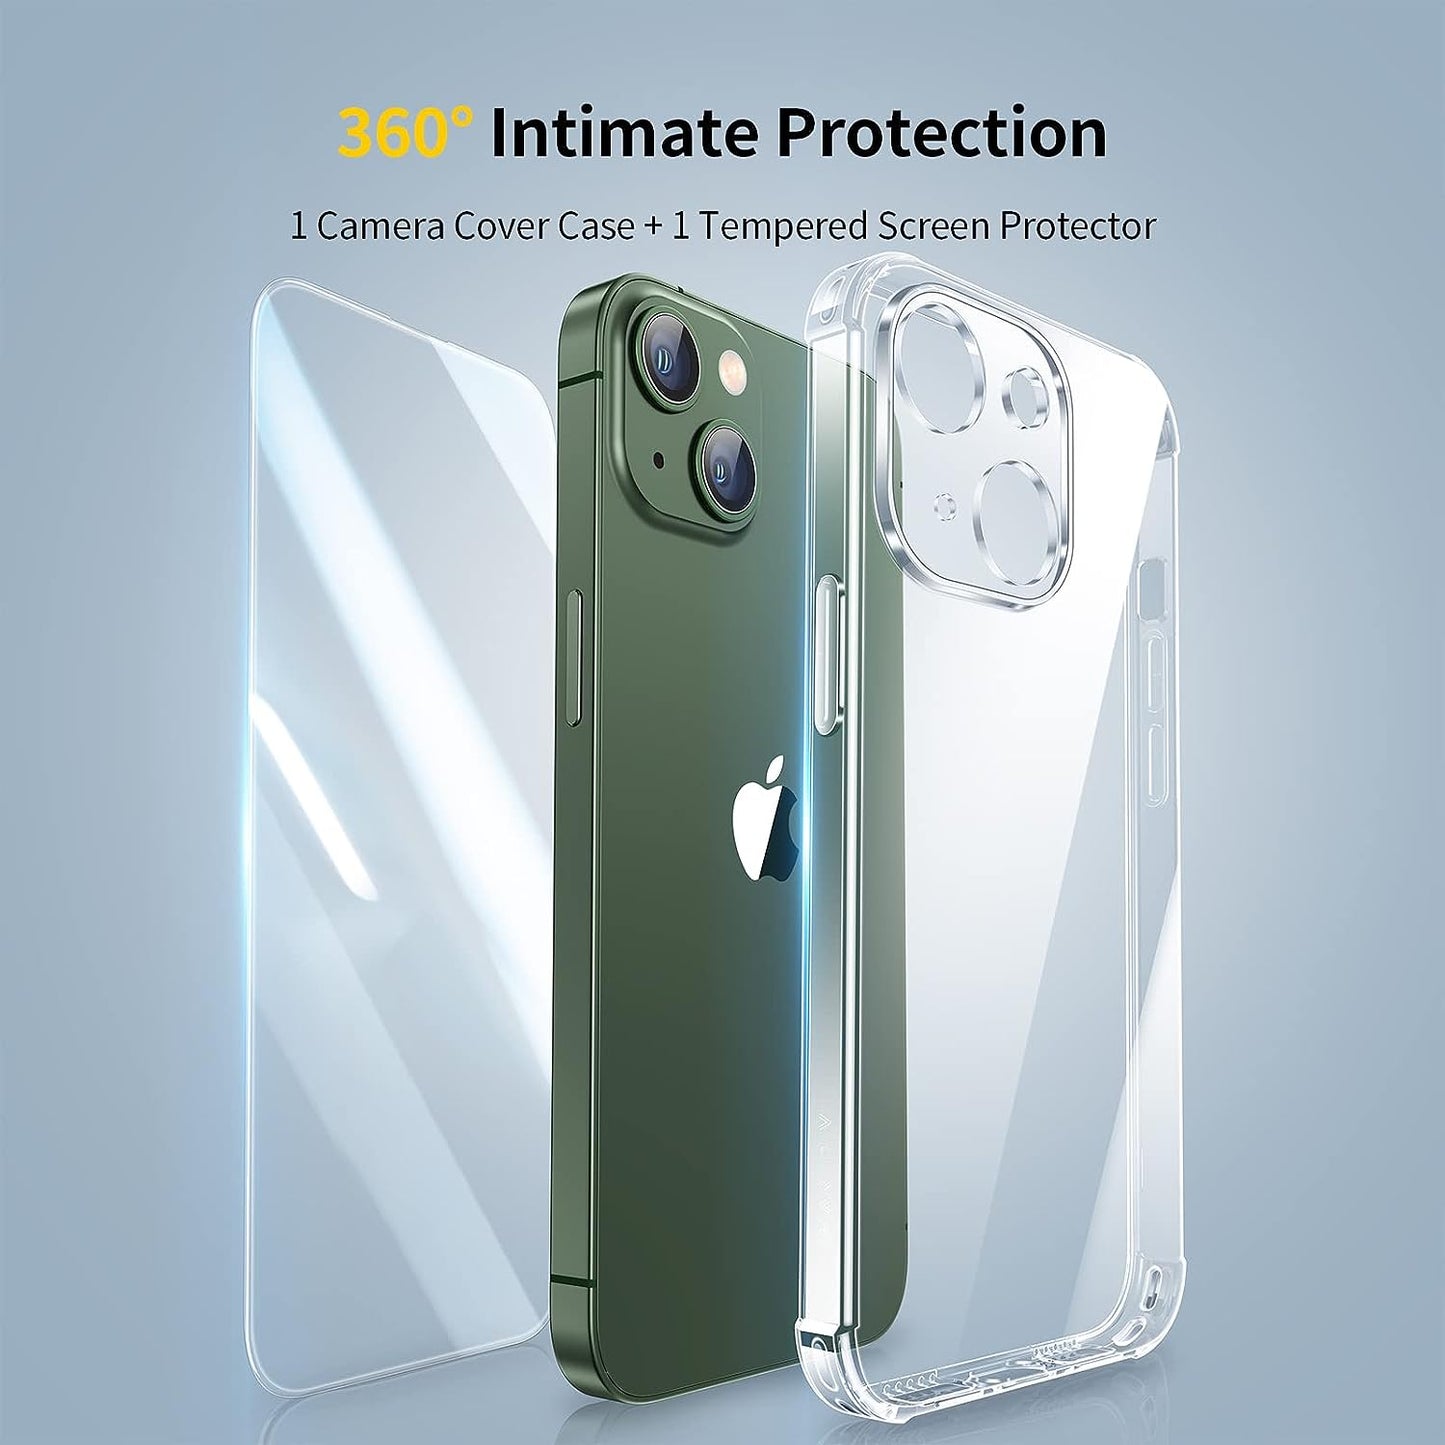 SMARTDEVIL Crystal Clear für iPhone 13 Hülle[Clear Stoßdämpfung Stoßstange][Mit Schutzfolie]Transparent Weich Militärischer Schutz Case,Dünn Kratzfest Flexible Handyhülle für iPhone 13(6.1") Case Klar